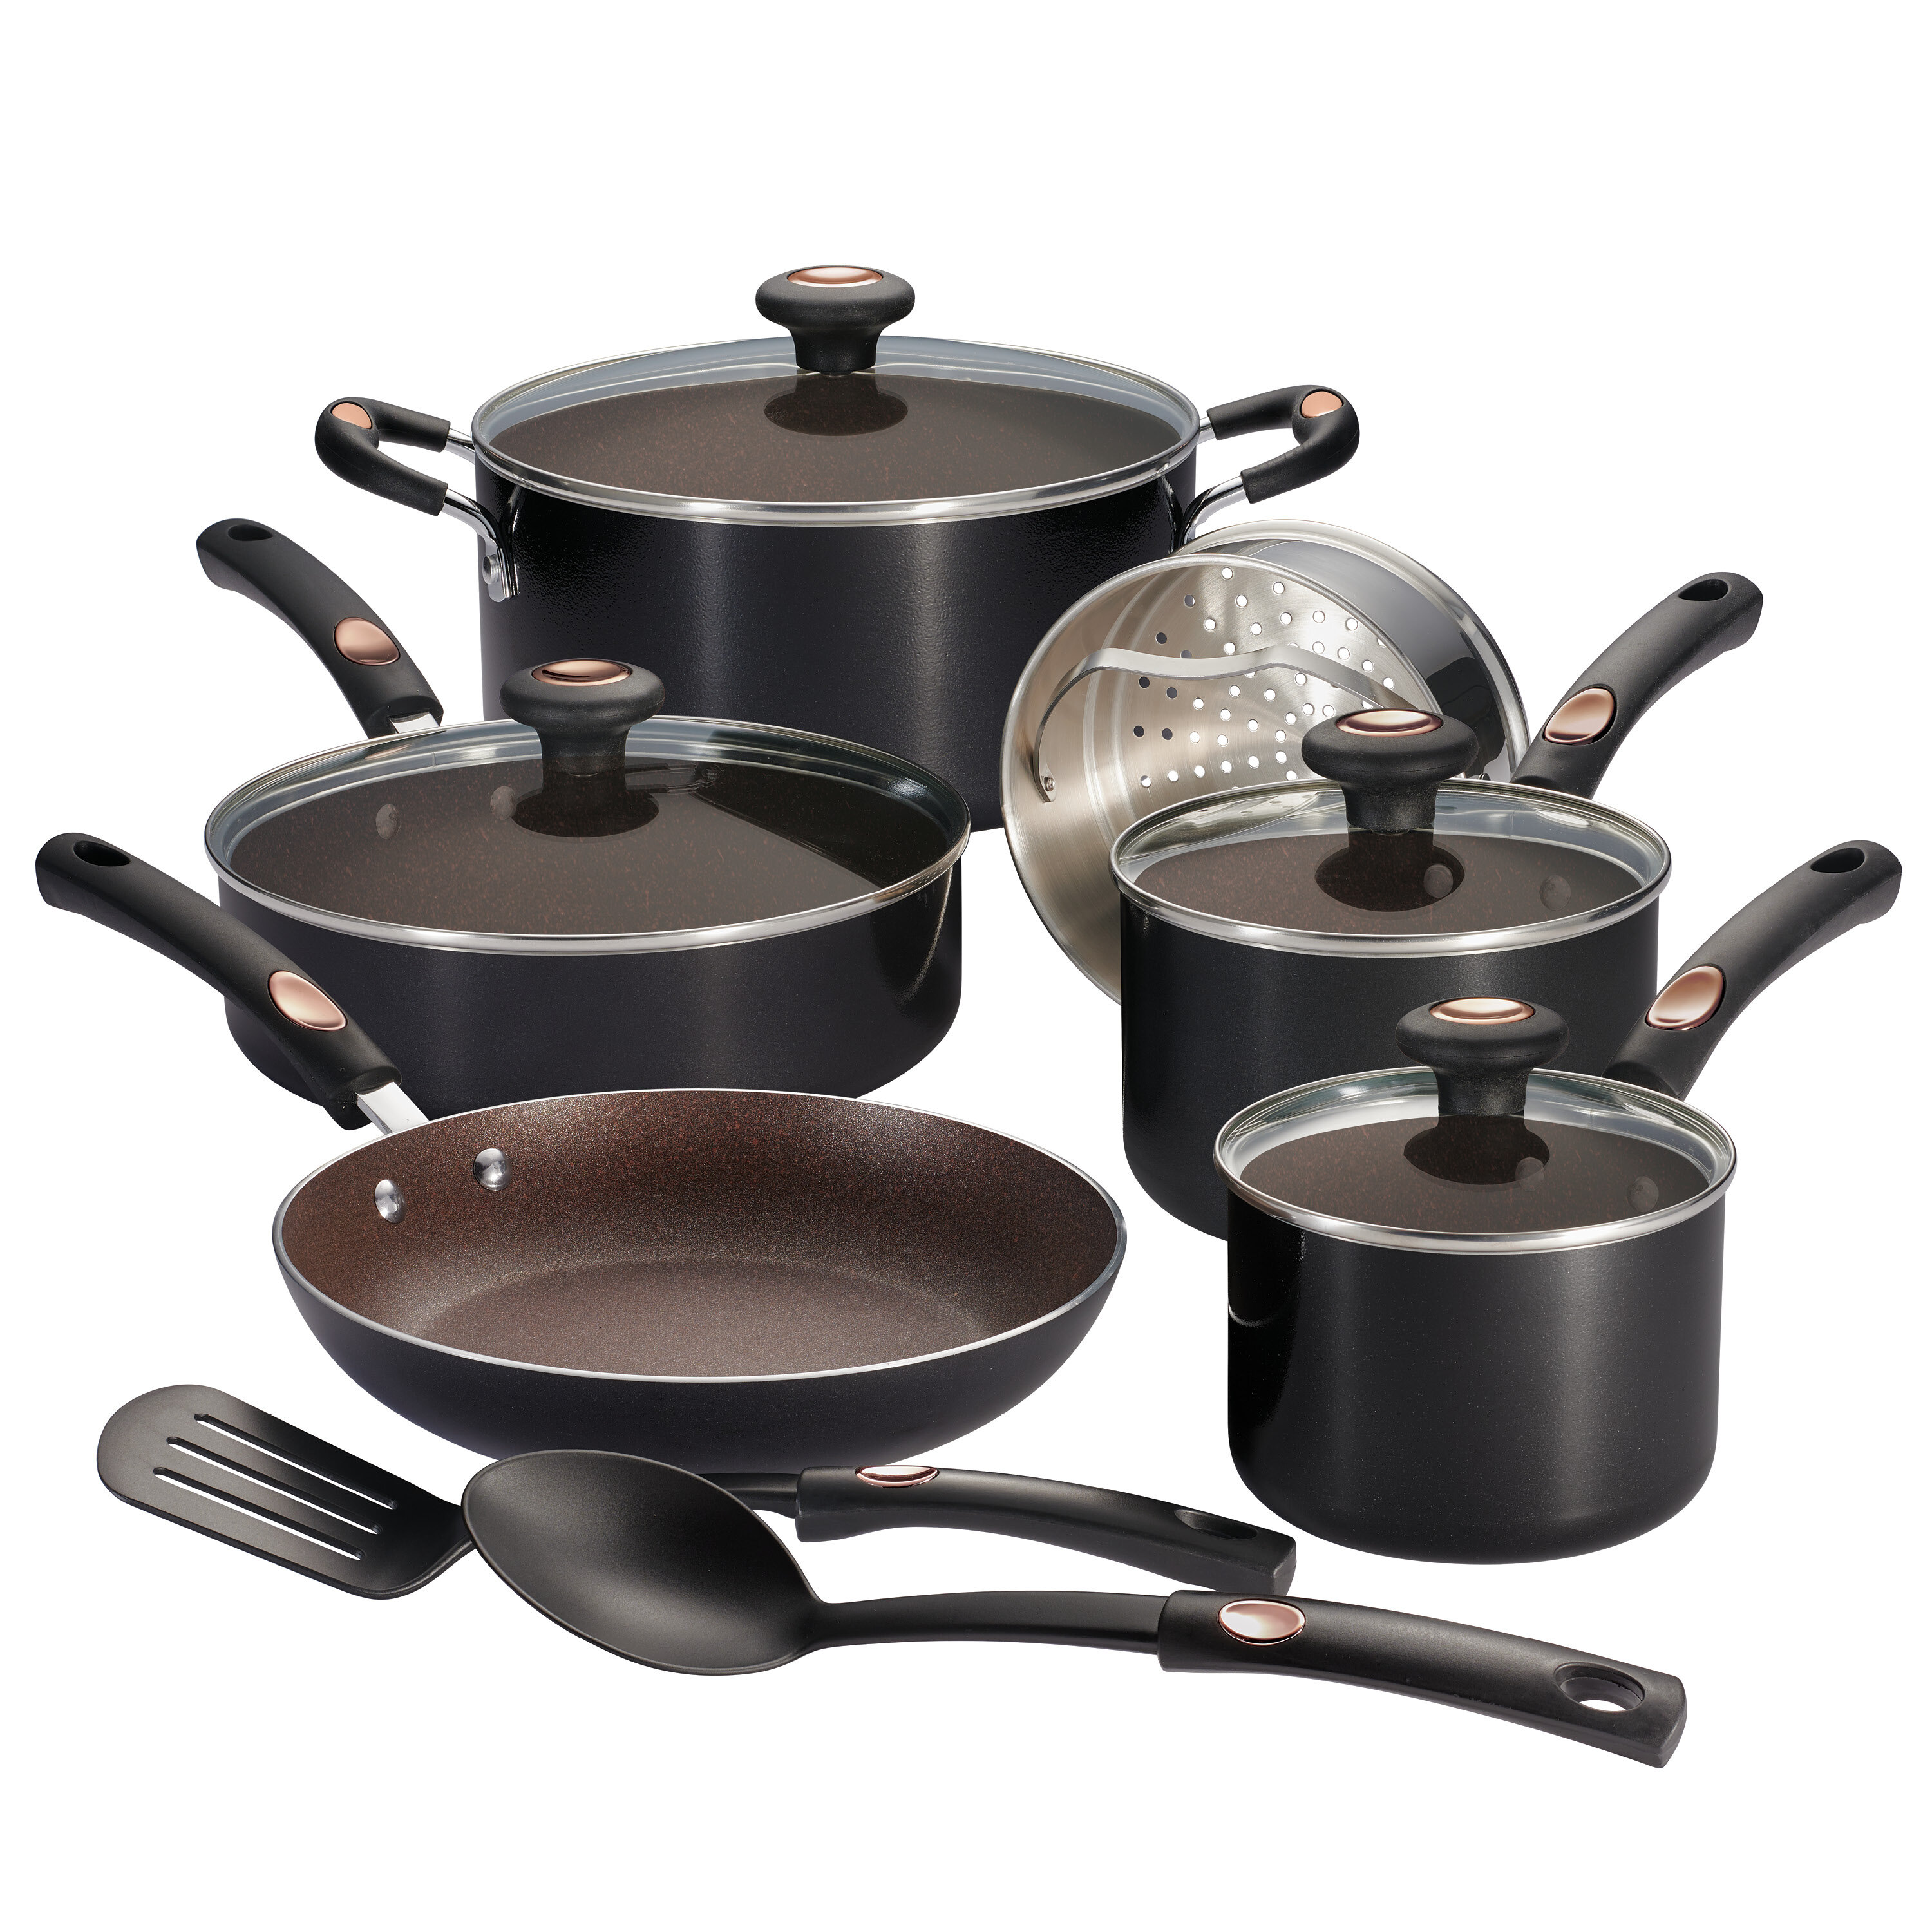 https://assets.wfcdn.com/im/58848869/compr-r85/1848/184850171/tramontina-pots-pans-12-pc-aluminum-nonstick-cookware-set.jpg